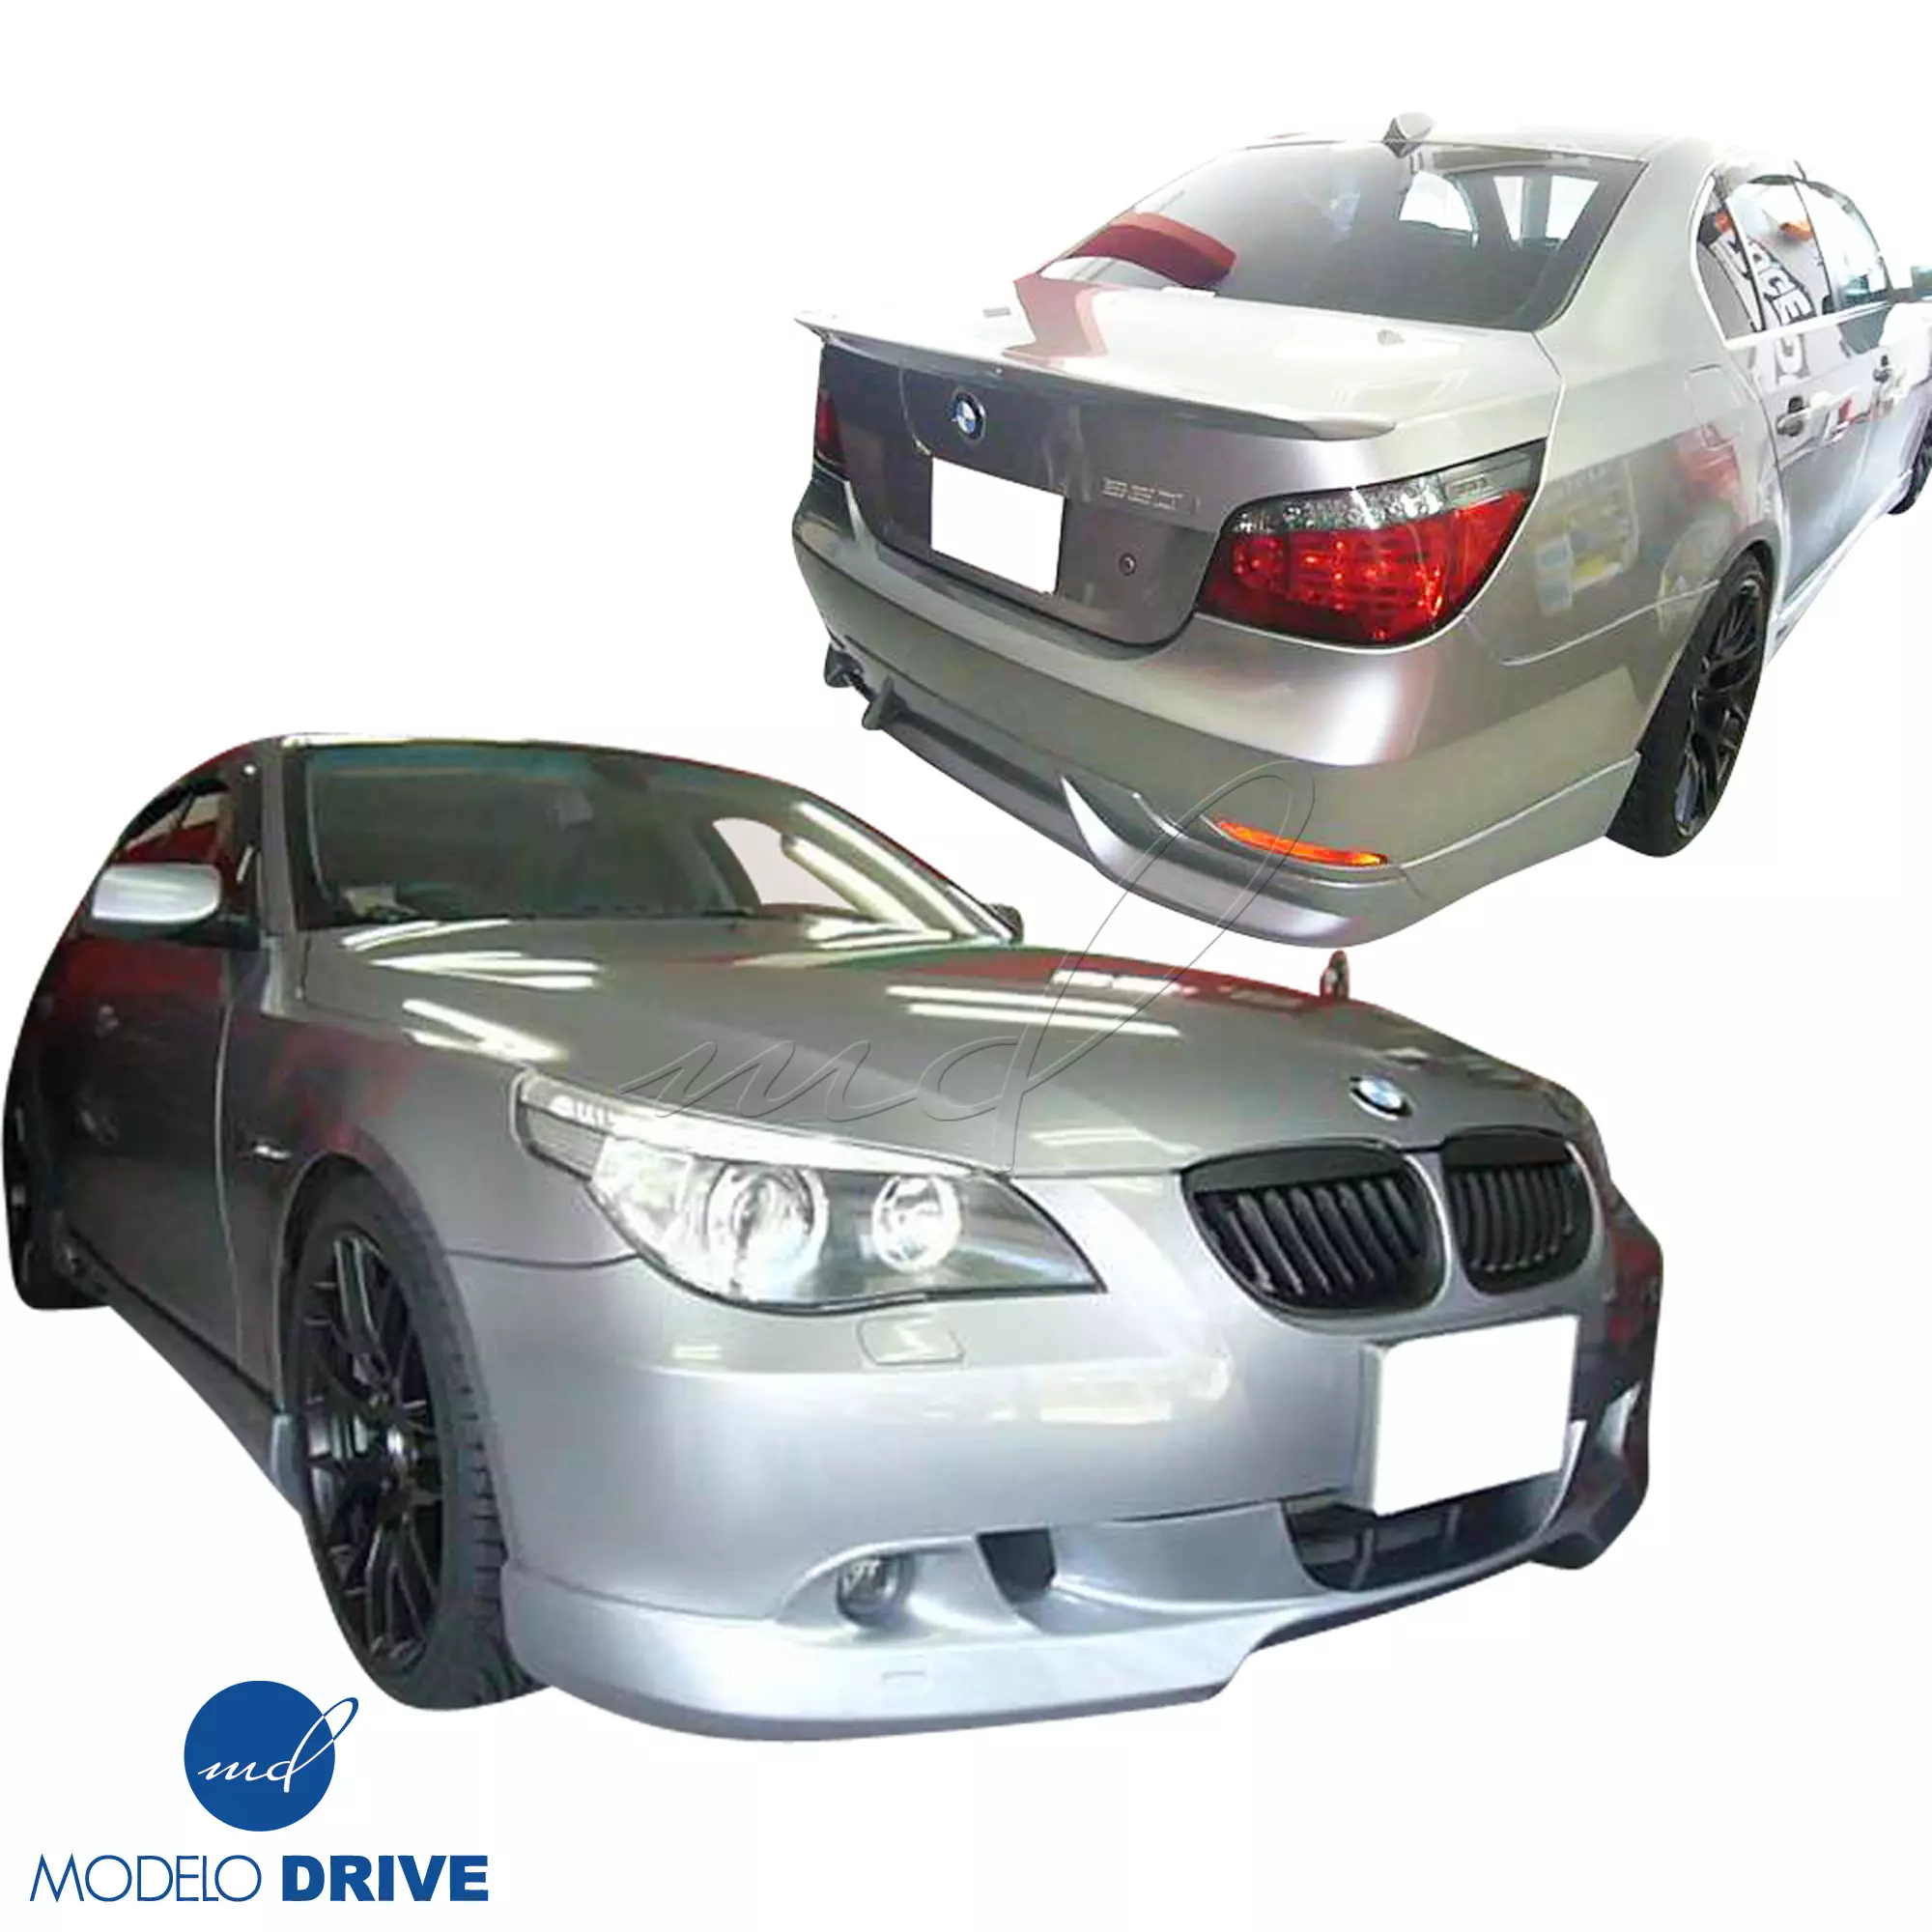 ModeloDrive FRP ASCH Body Kit 4pc > BMW 5-Series E60 2004-2010 > 4dr - Image 2